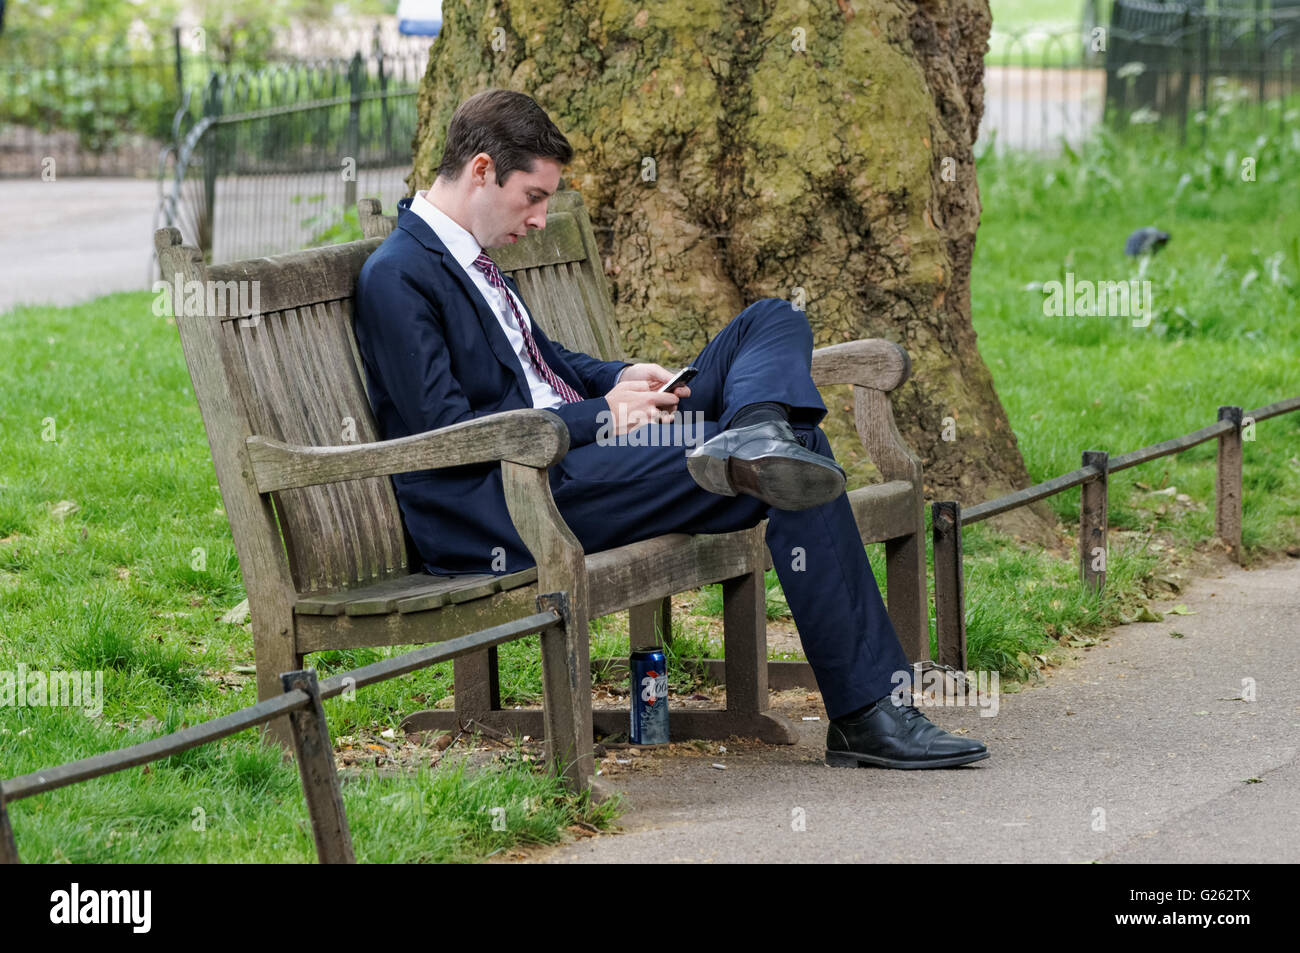 Jeune homme assis sur un banc à St James's Park, Londres Angleterre Royaume-Uni UK Banque D'Images